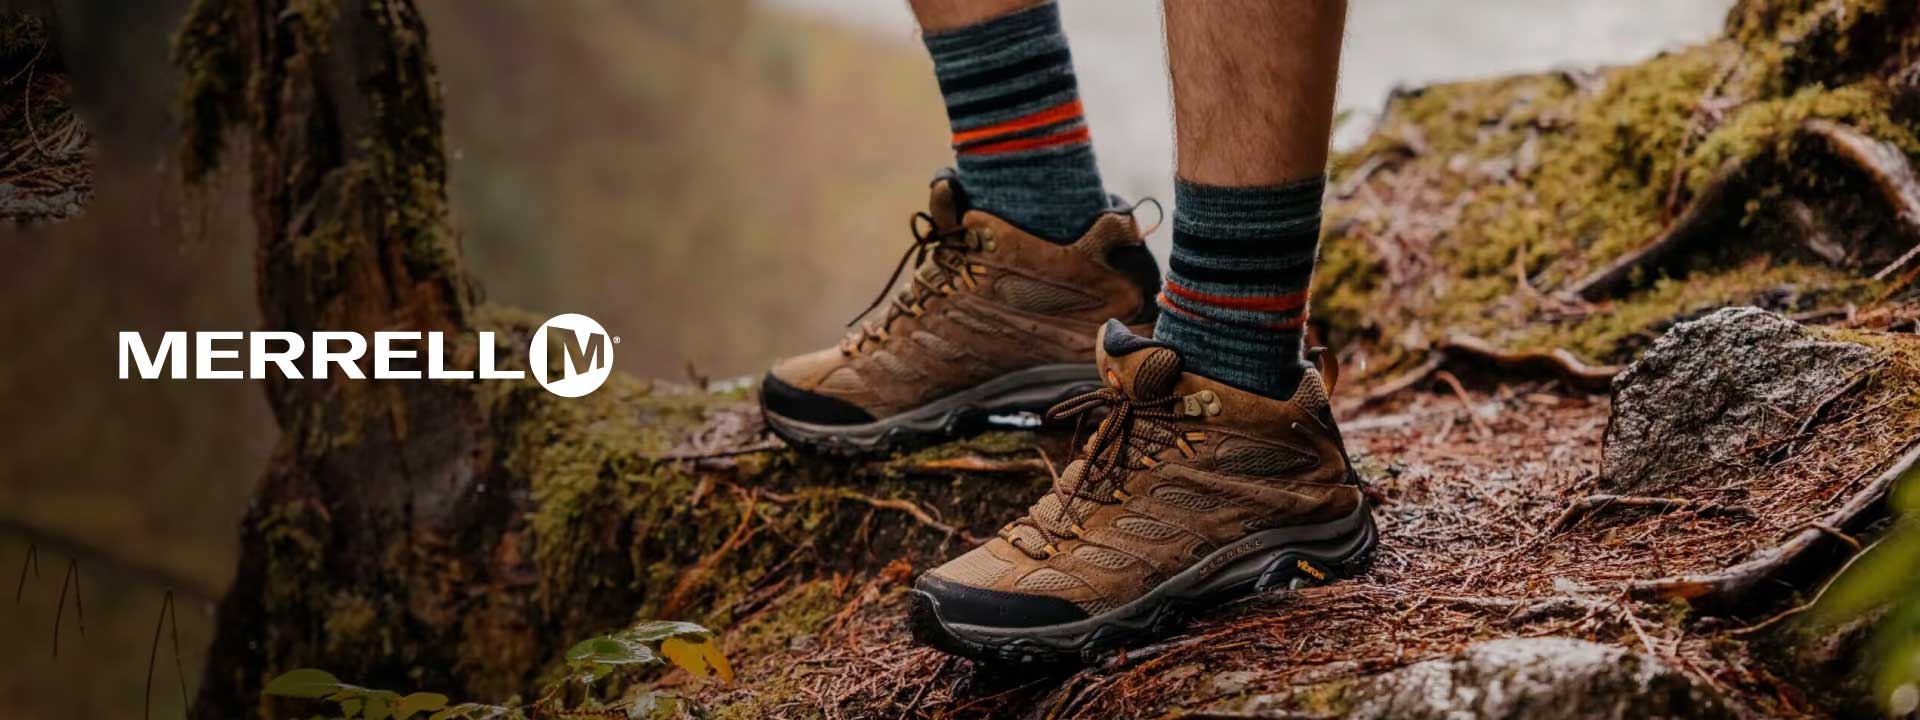 El calzado para trekking, running o casual lo tiene Merrel. Incluido el famoso modelo Chameleon, ideal para Trekking.